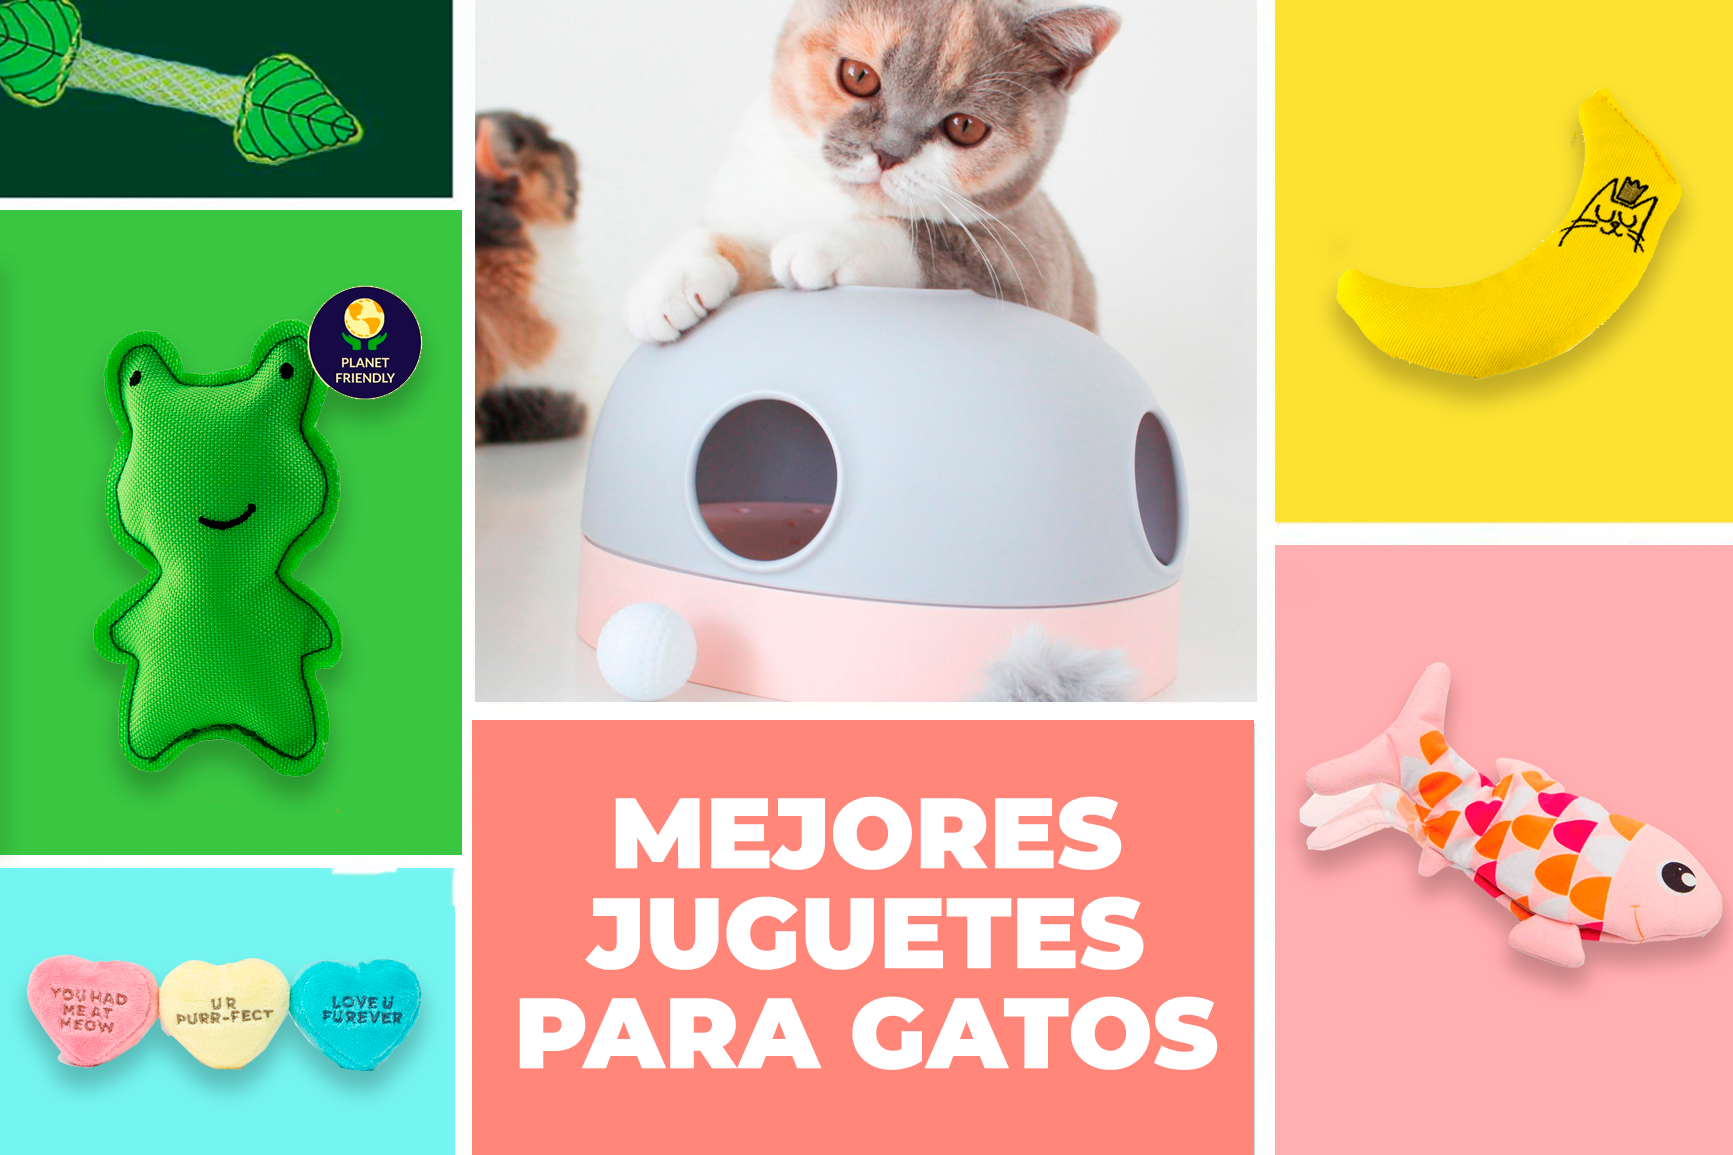 JUGUETE PEZ CON MOVIMIENTO – My Pet Store - Tienda de mascotas Online